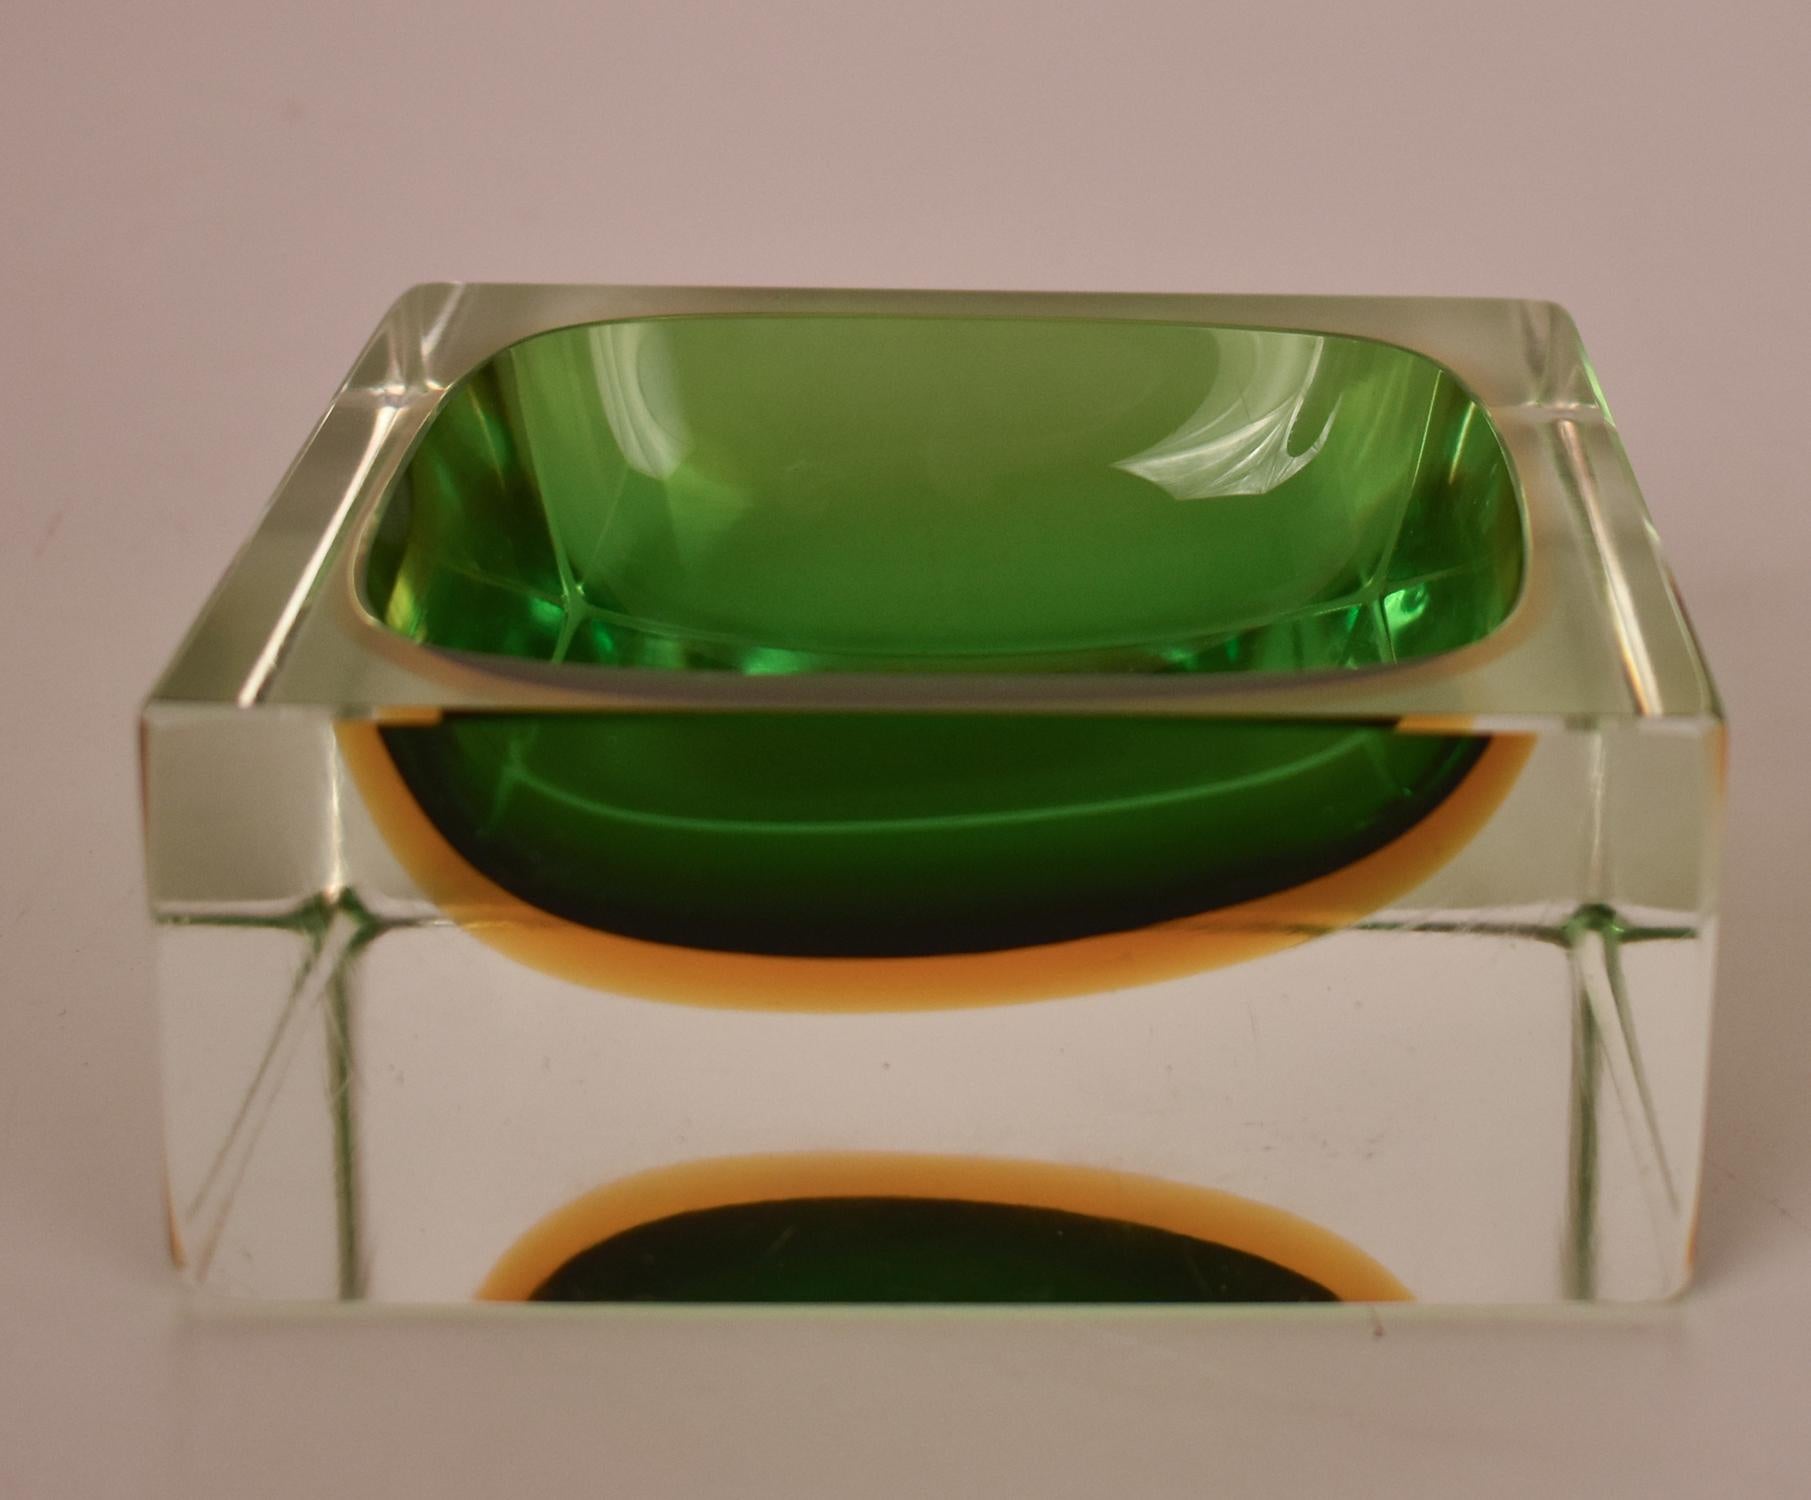  Grand bol Sommerso en verre de Murano vert  Flavio Poli, Italie, années 1970.
Attribué à Flavio Poli.
Avec la technique Sommerso. Couleurs vertes, jaunes et transparentes.
La combinaison des trois couleurs est fascinante.
Bon état.



